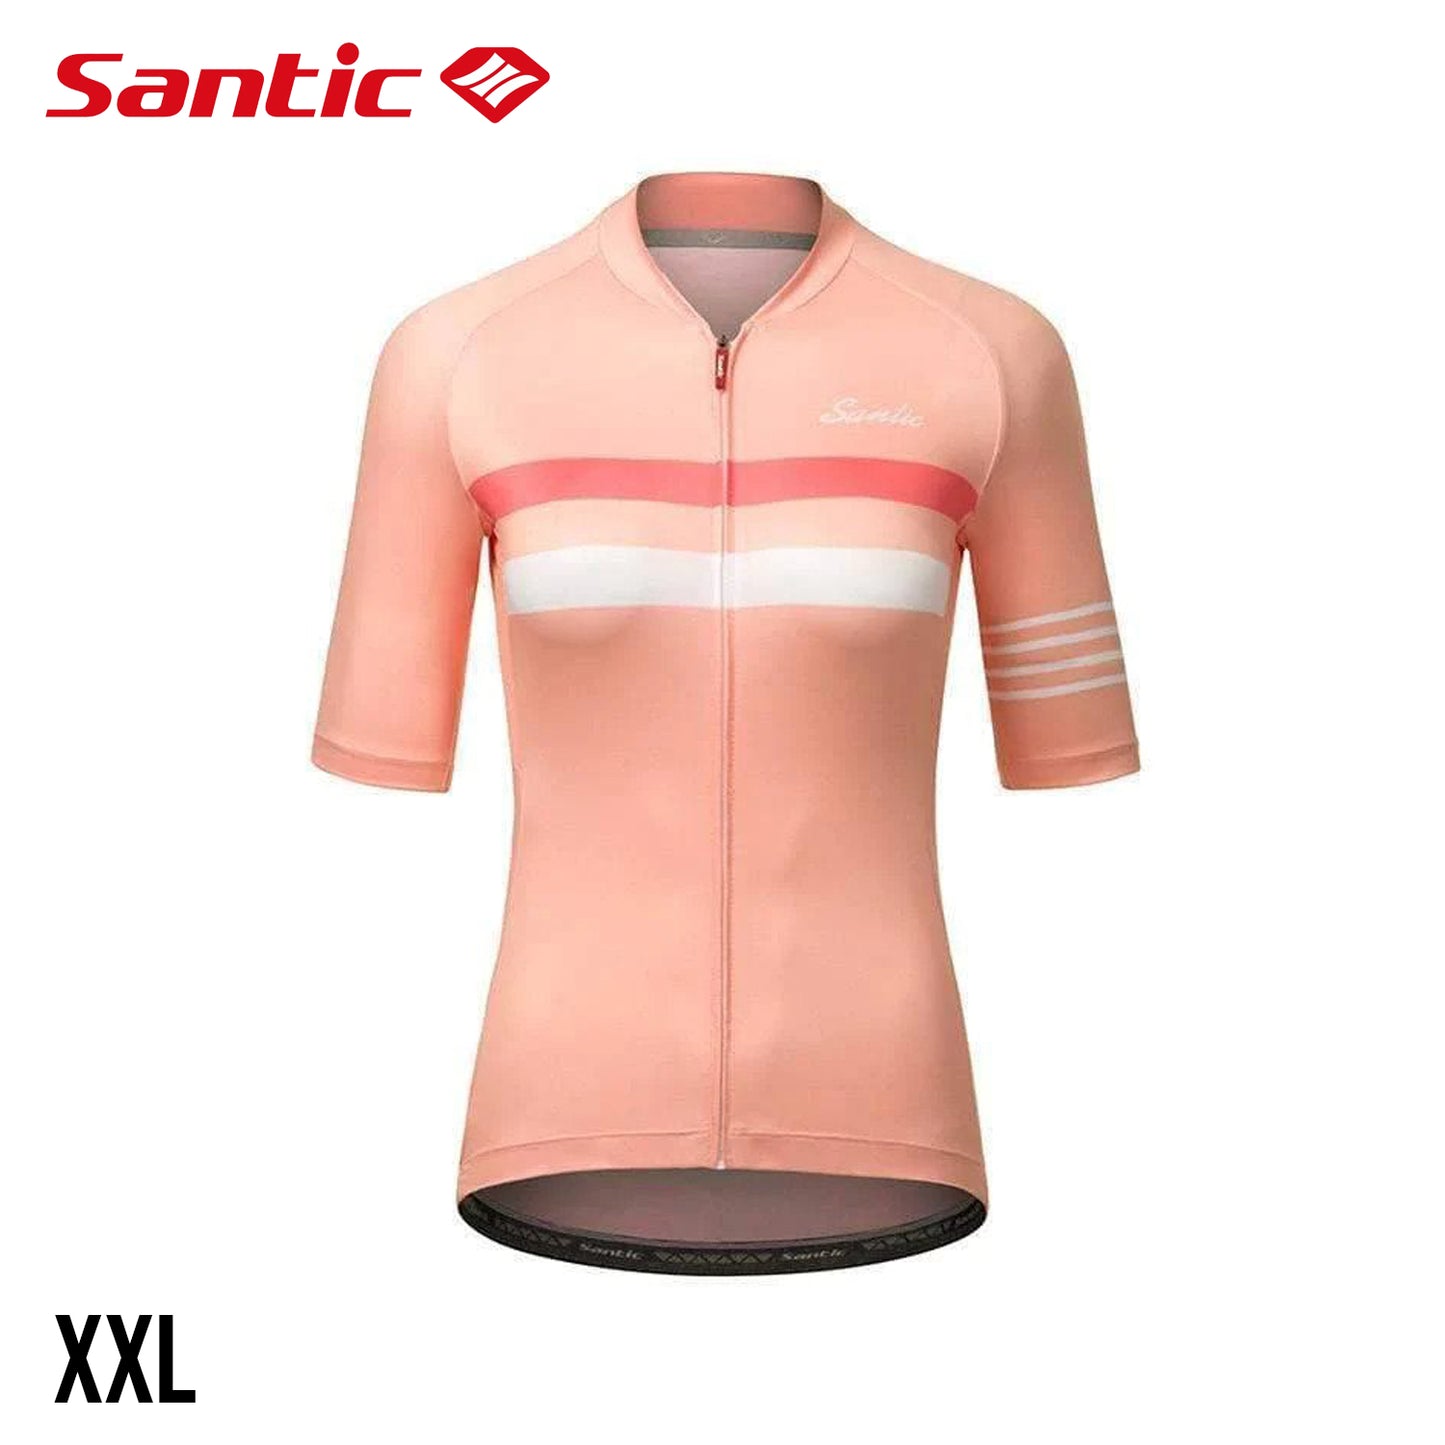 Santic Pali Women's Short Sleeve Summer Jersey - Pink